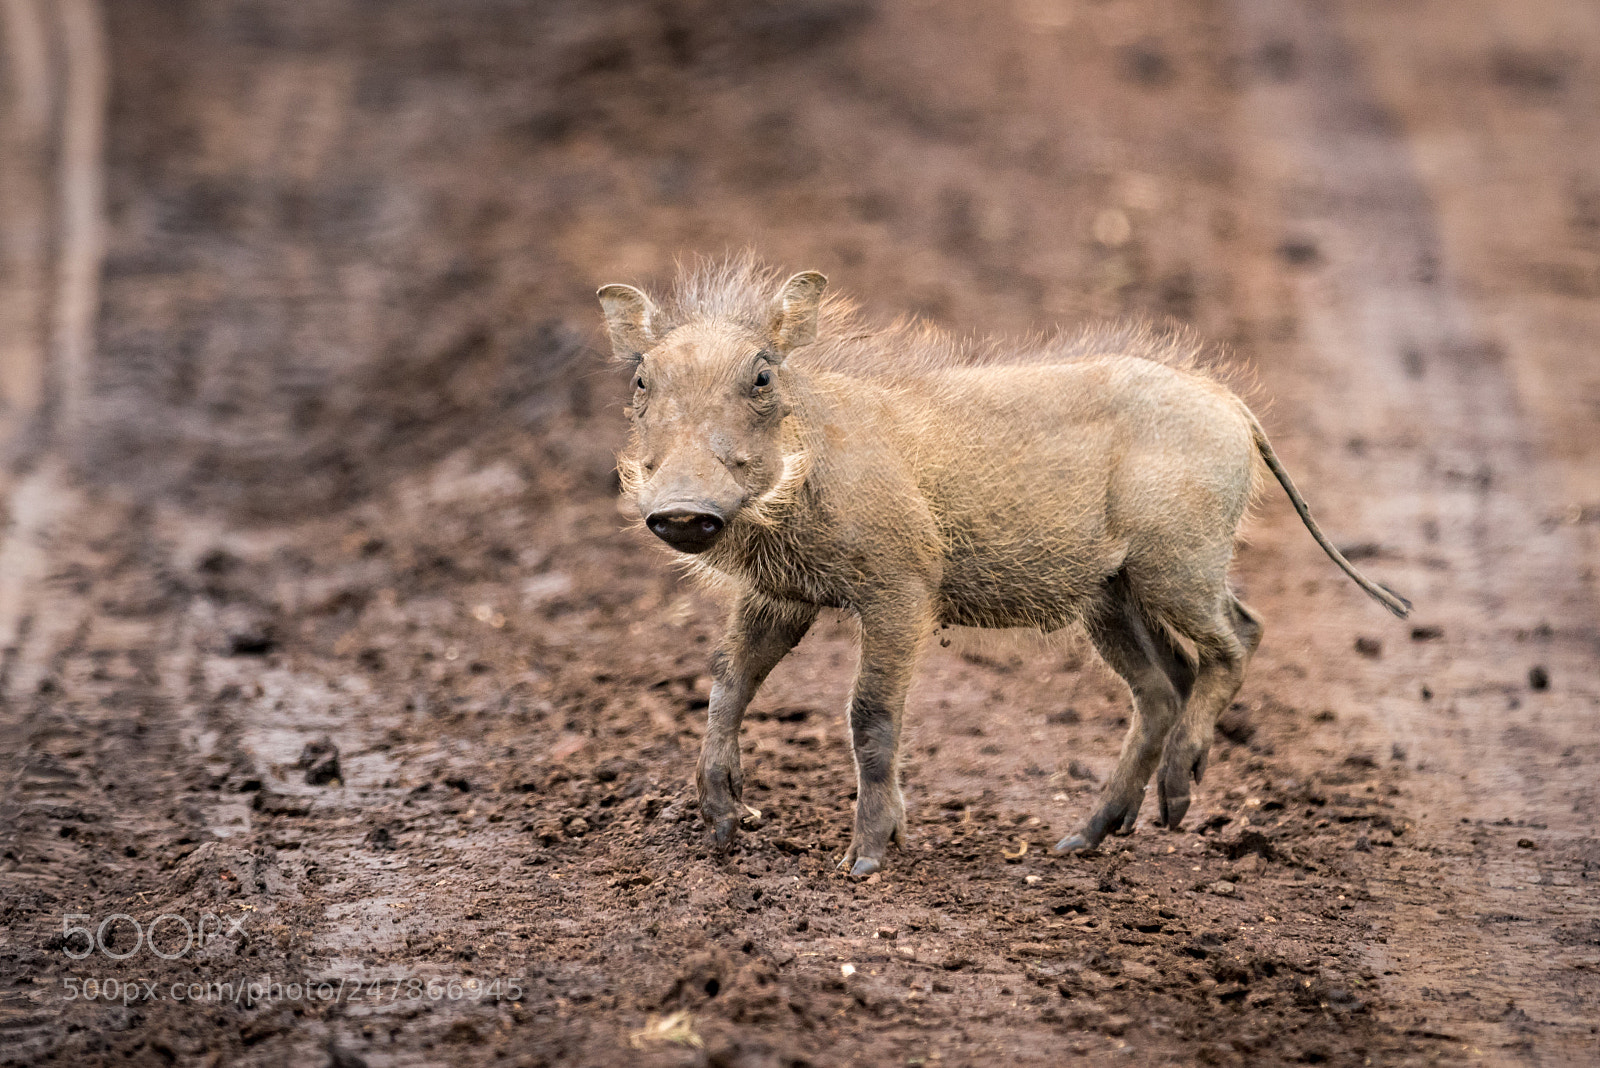 Nikon D810 sample photo. Baby warthog facing camera photography